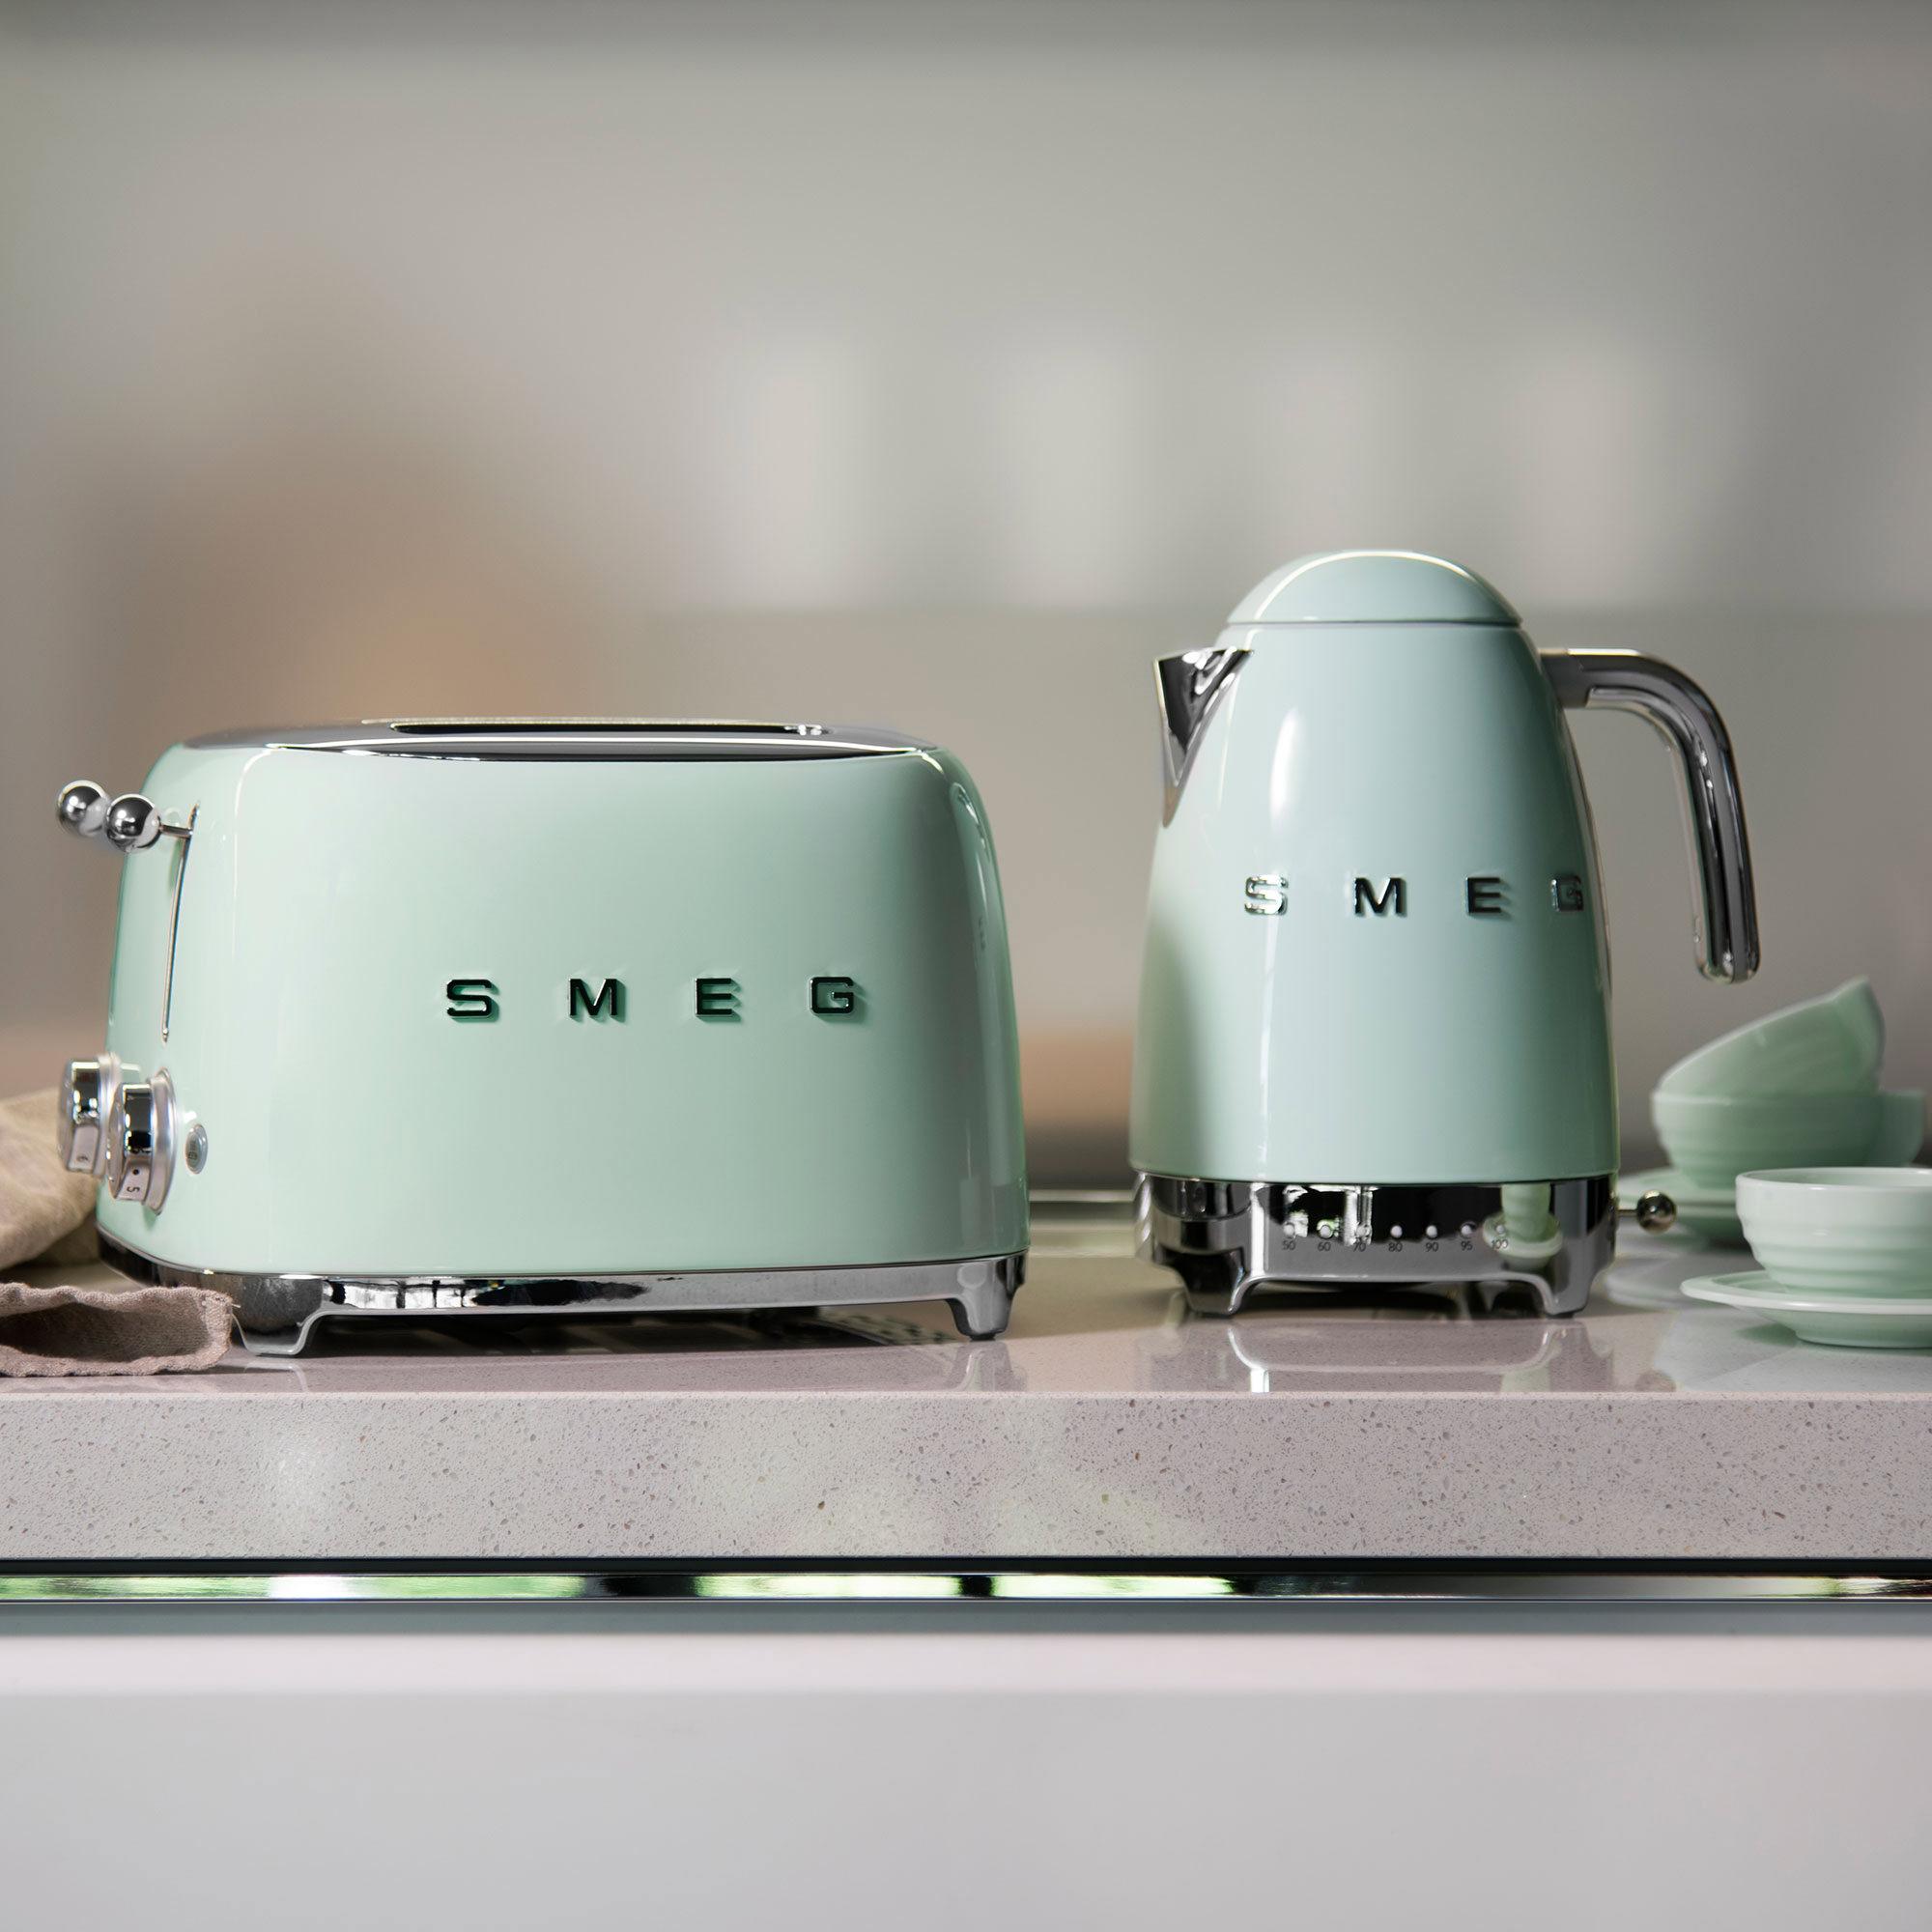 Smeg 50's Retro Style 4 Slot Toaster Pastel Green Image 3